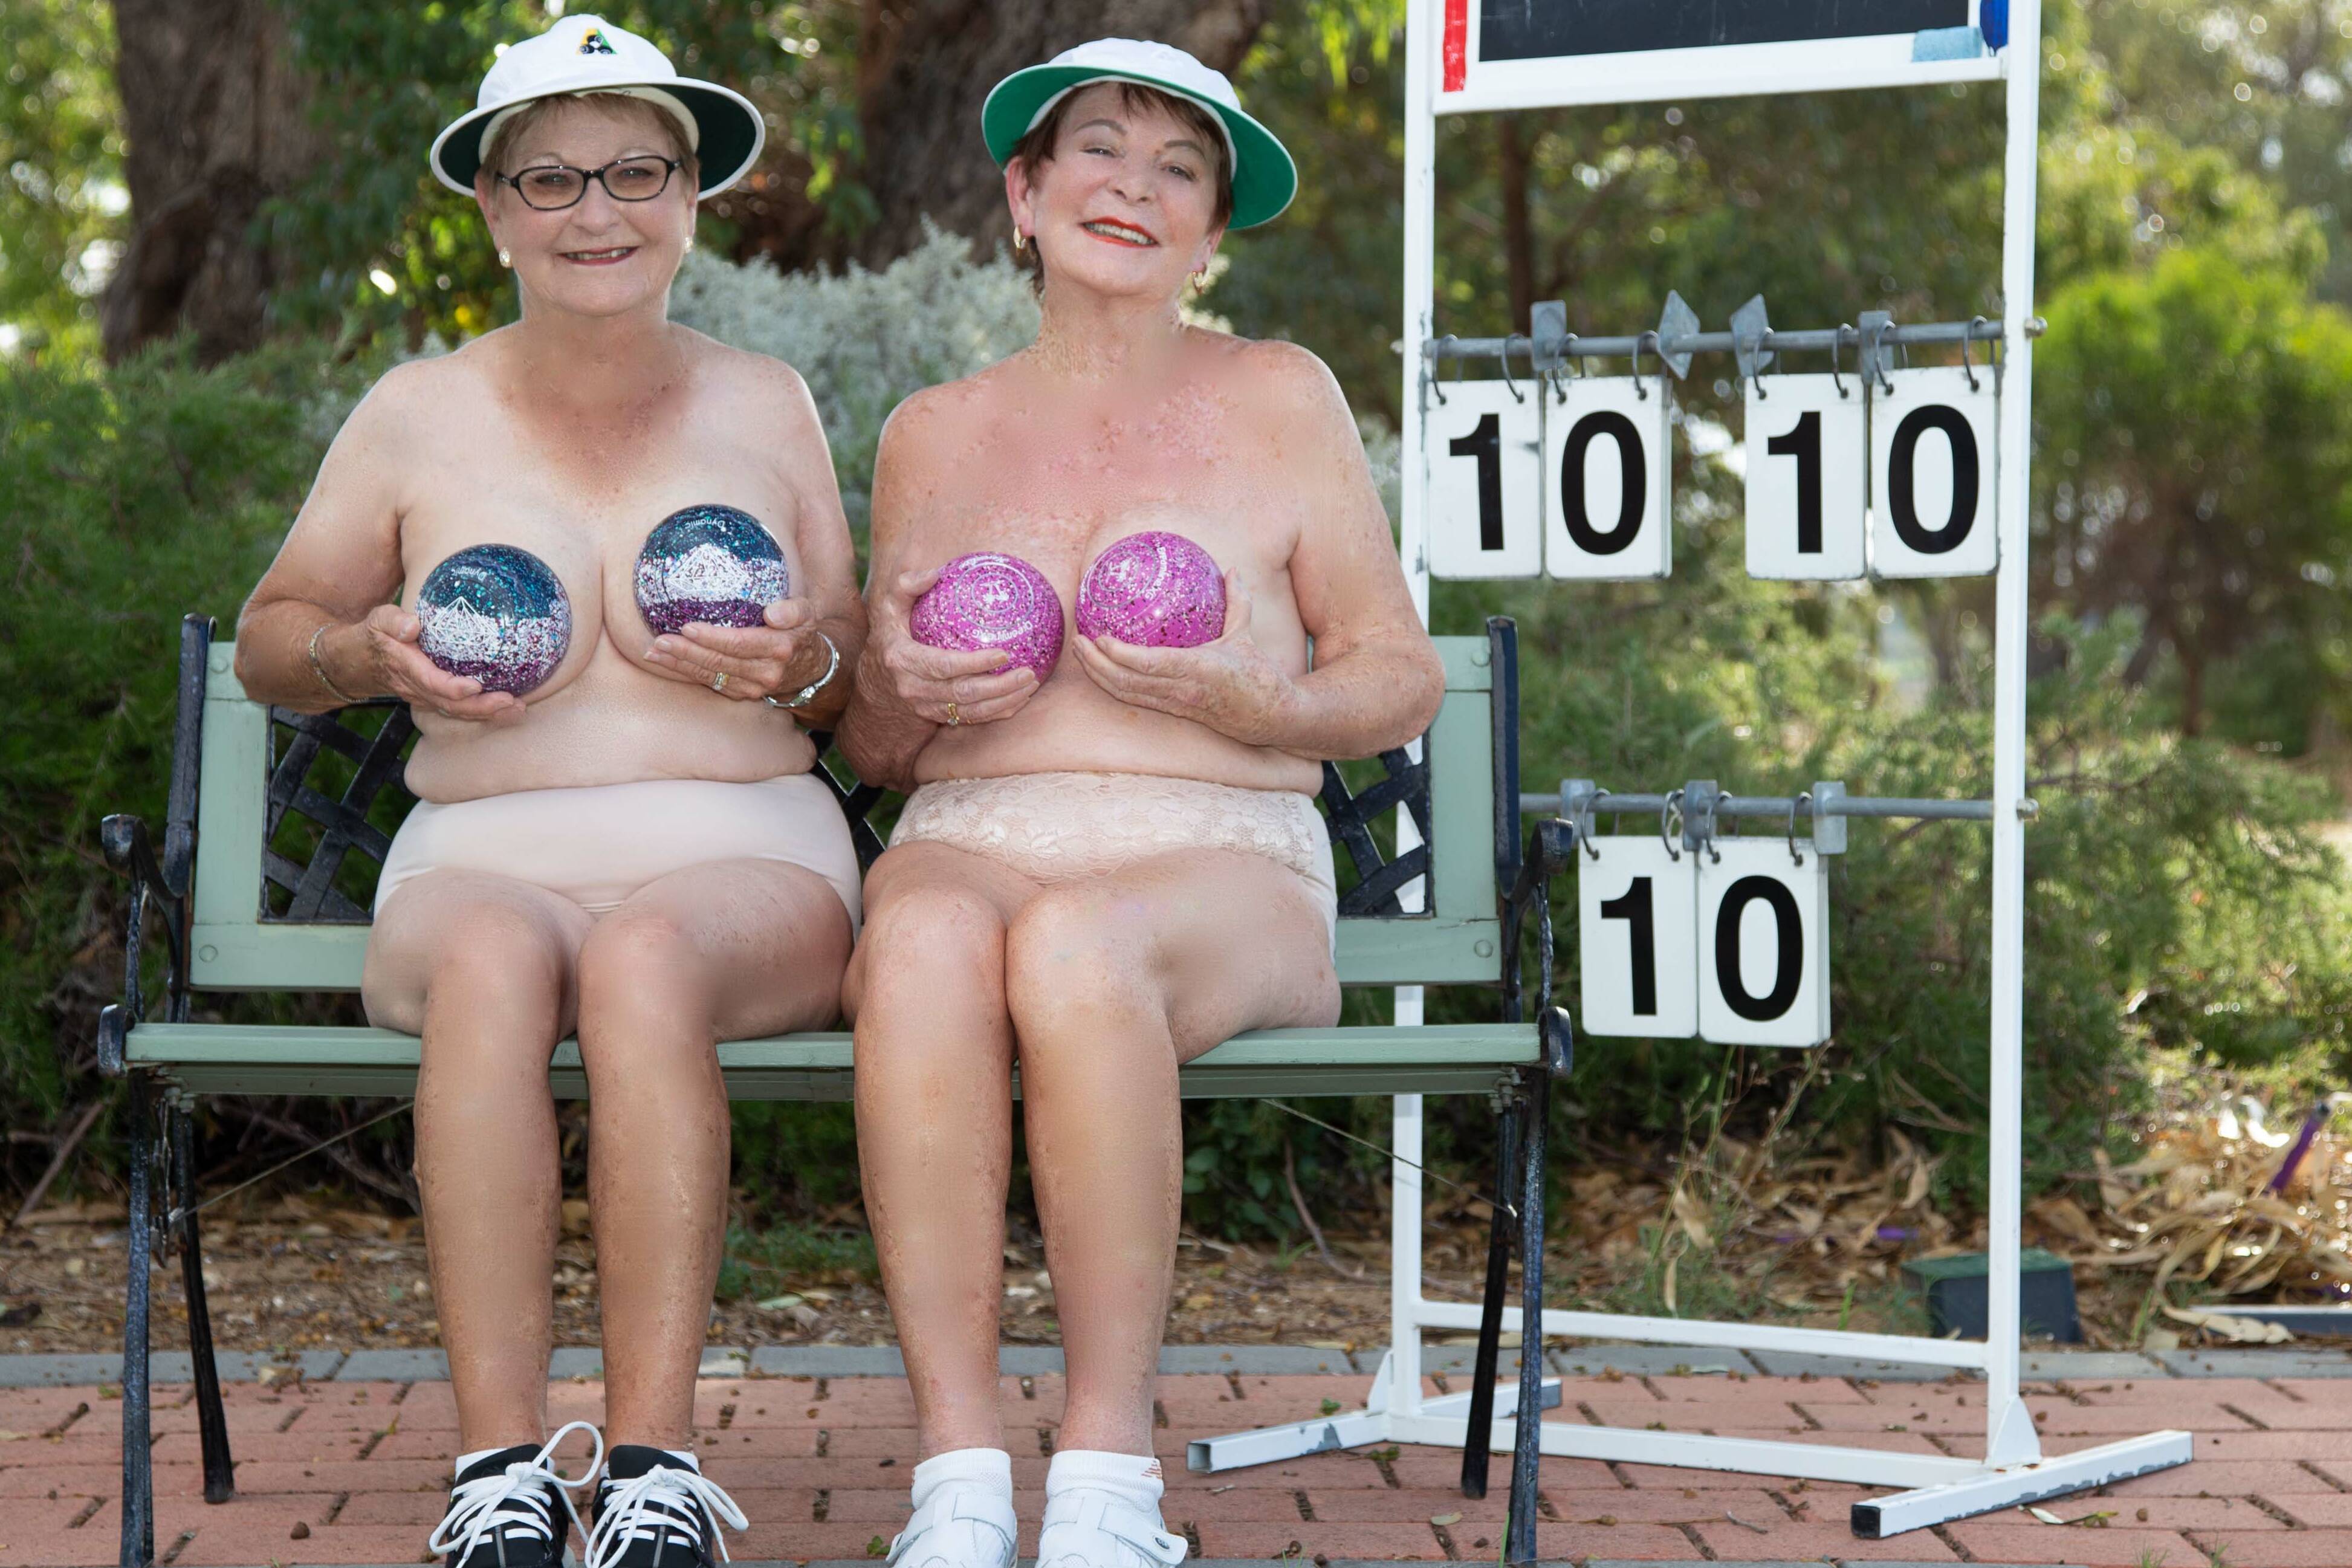 Canton Calendar Girls create tastefully-nude cancer fundraiser